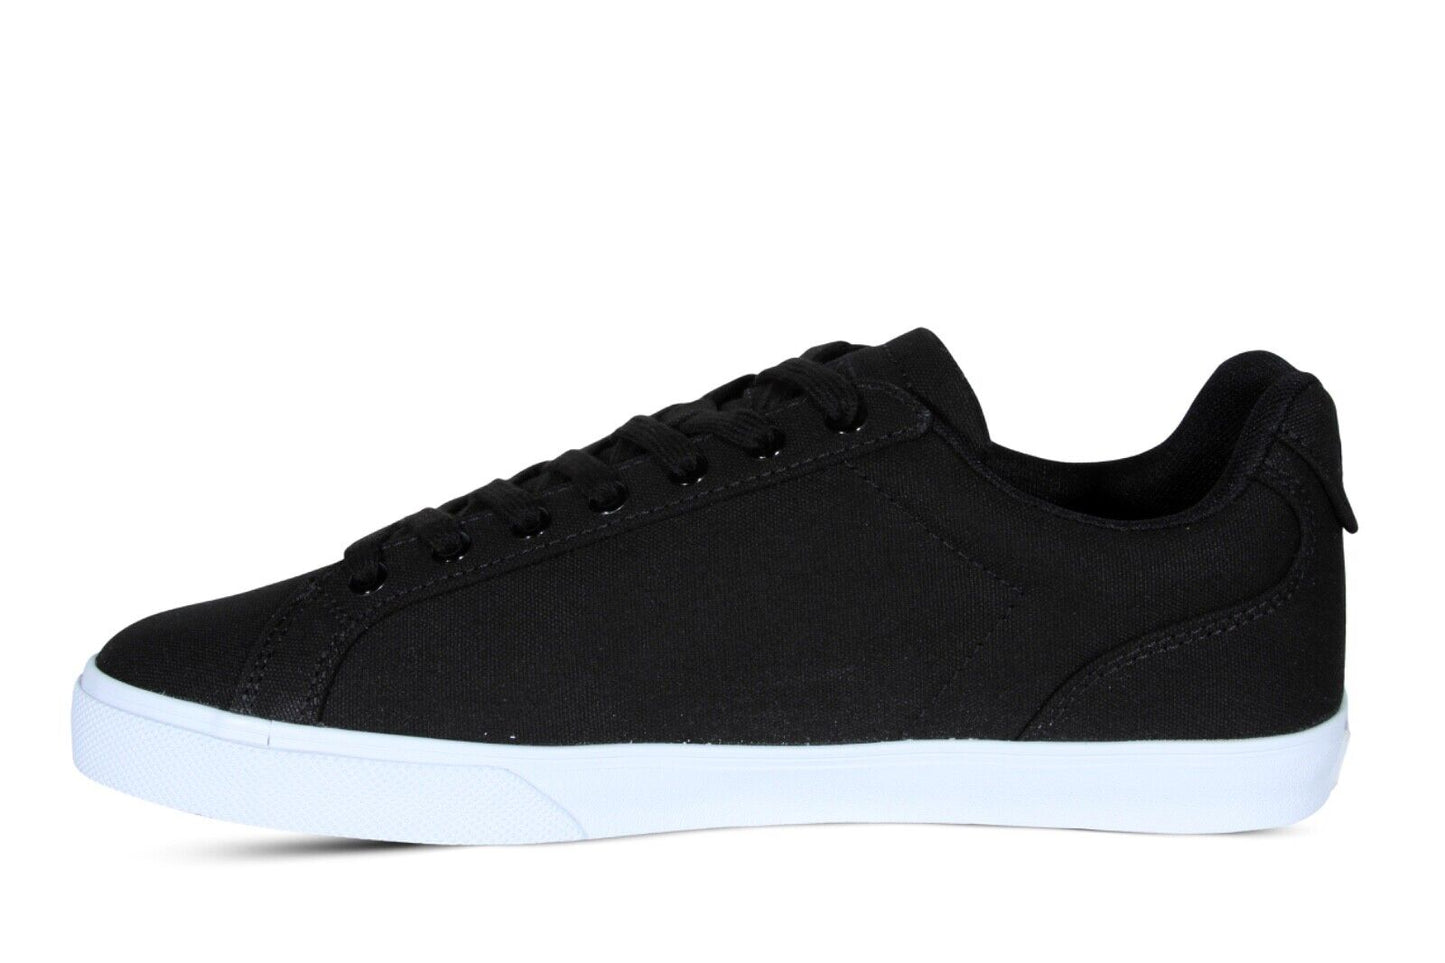 Lacoste Lerond Pro BL 123 1 CMA Men’s Sneakers in Black and White 745CMA0054312